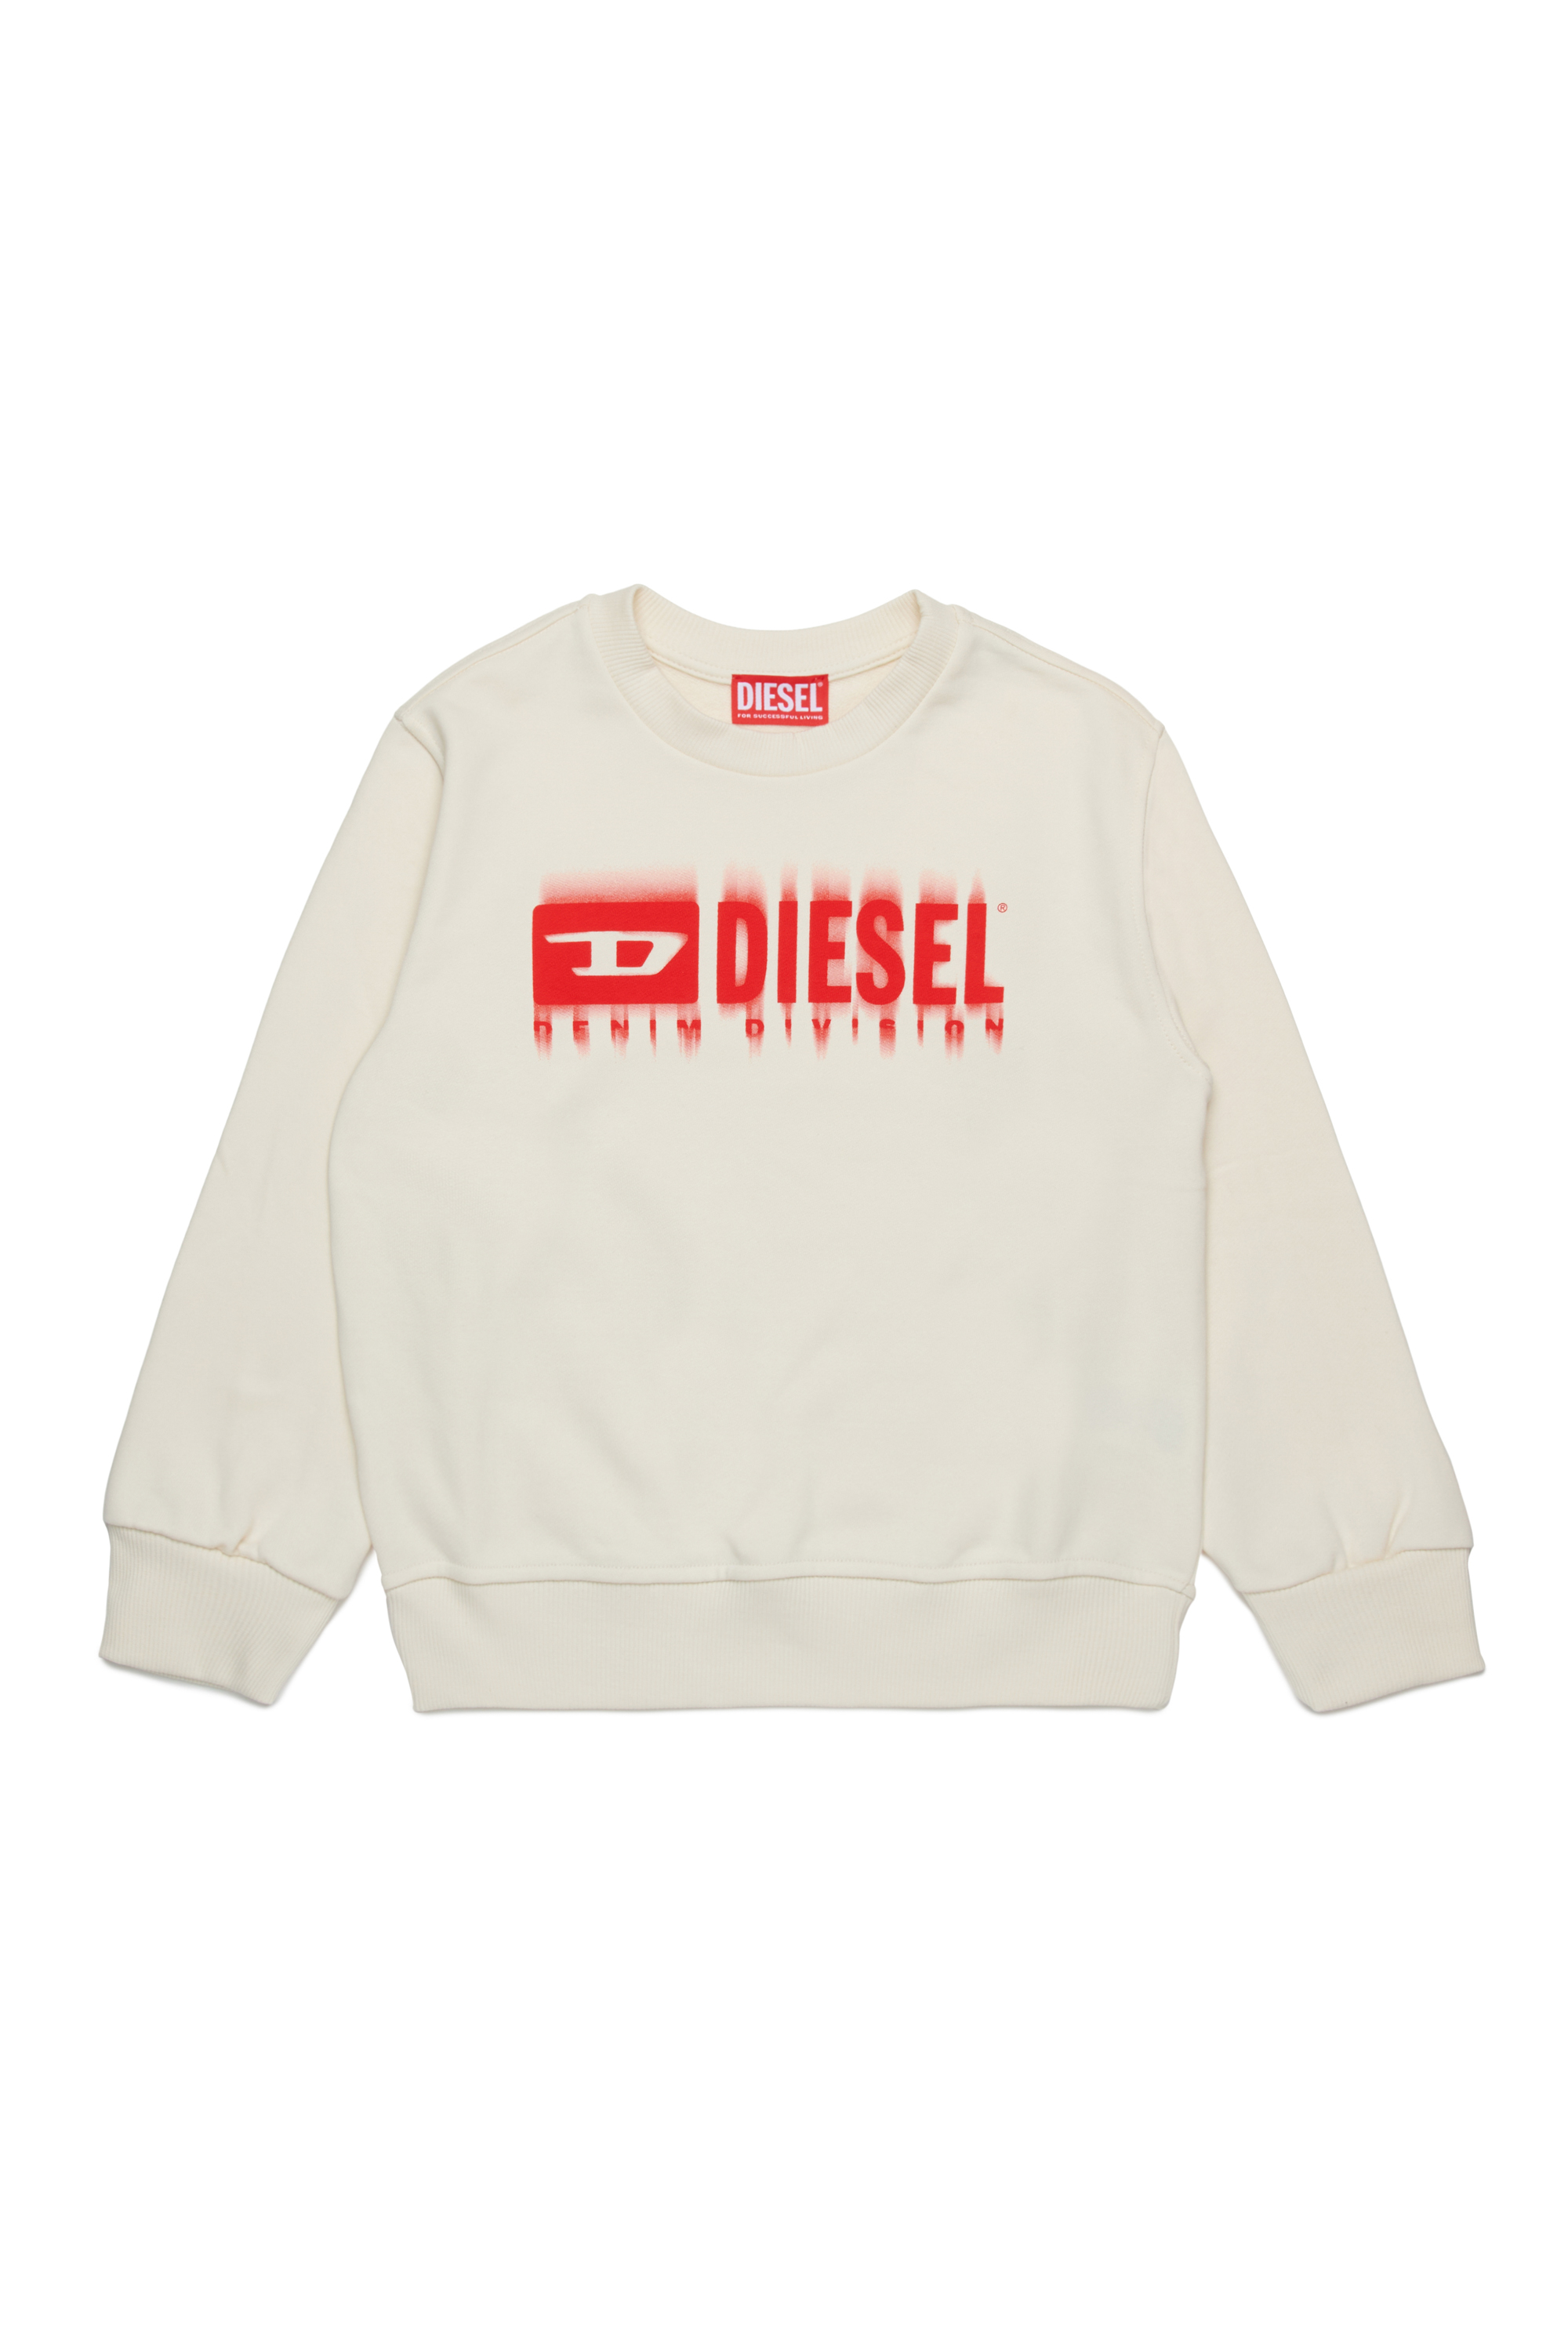 Diesel - SGINNL8 OVER, Man Sweatshirt with smudged logo in White - Image 1